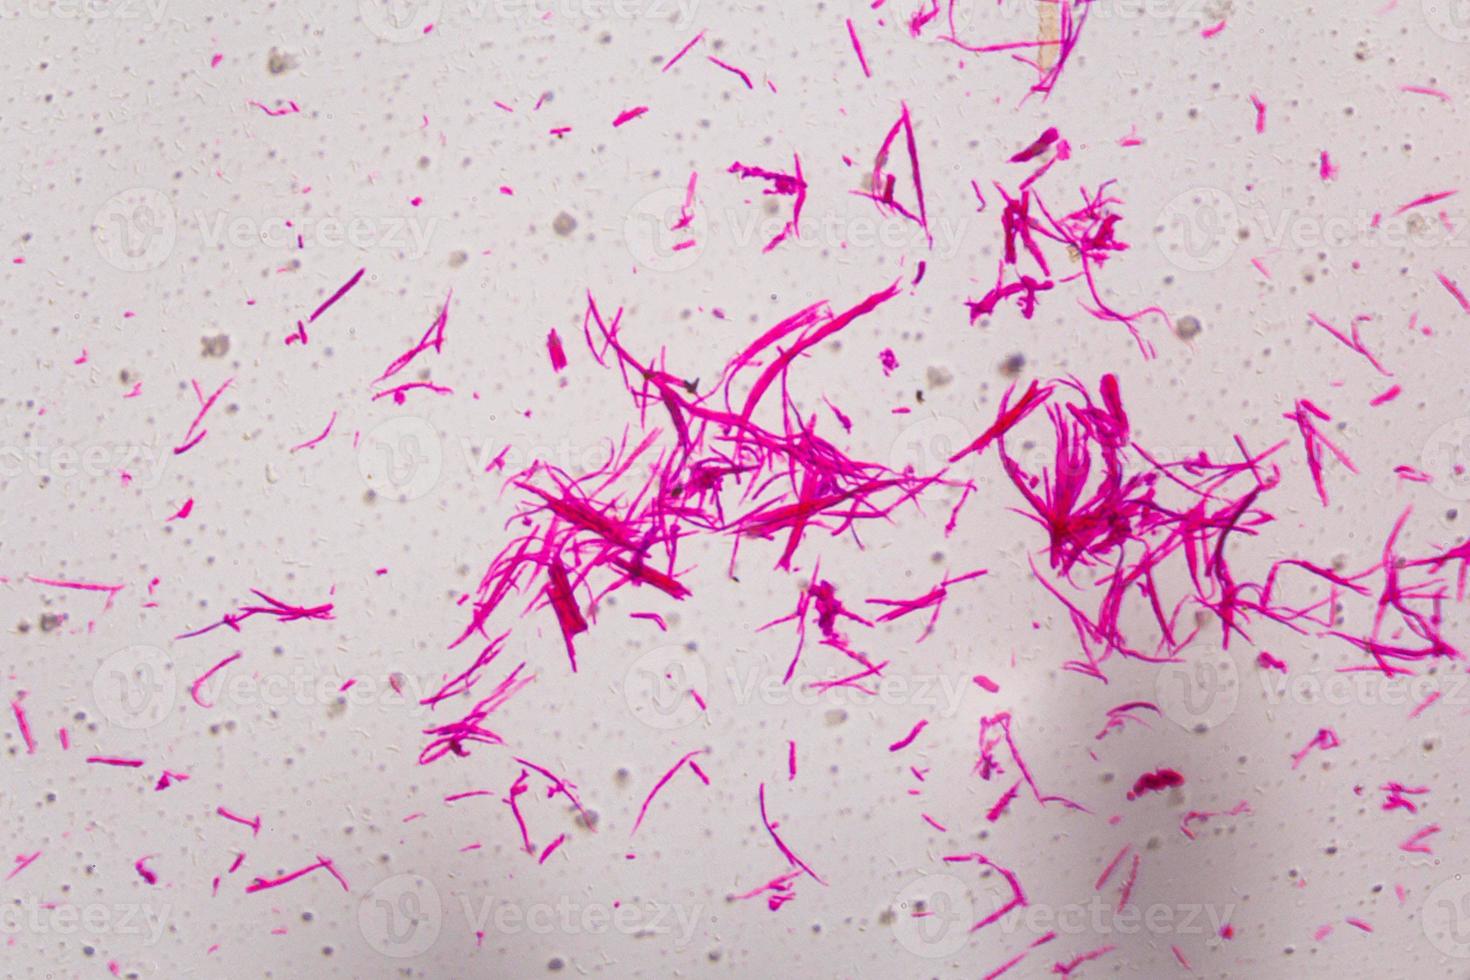 glatte Muskulatur unter dem Mikroskop getrennt - abstrakte rosa Linien auf weißem Hintergrund foto